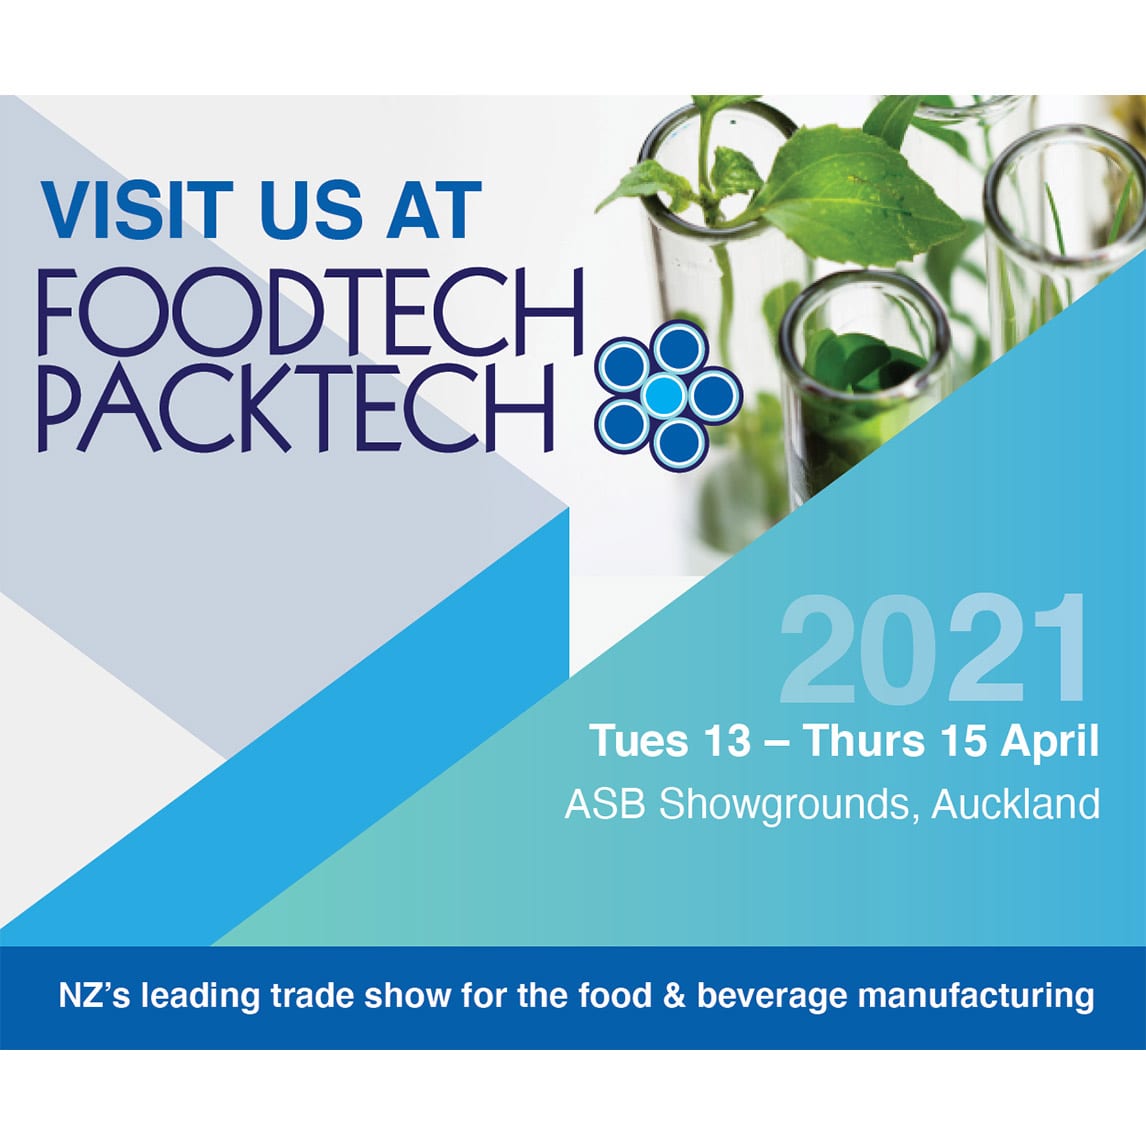 Foodtech Packtech Trade Show